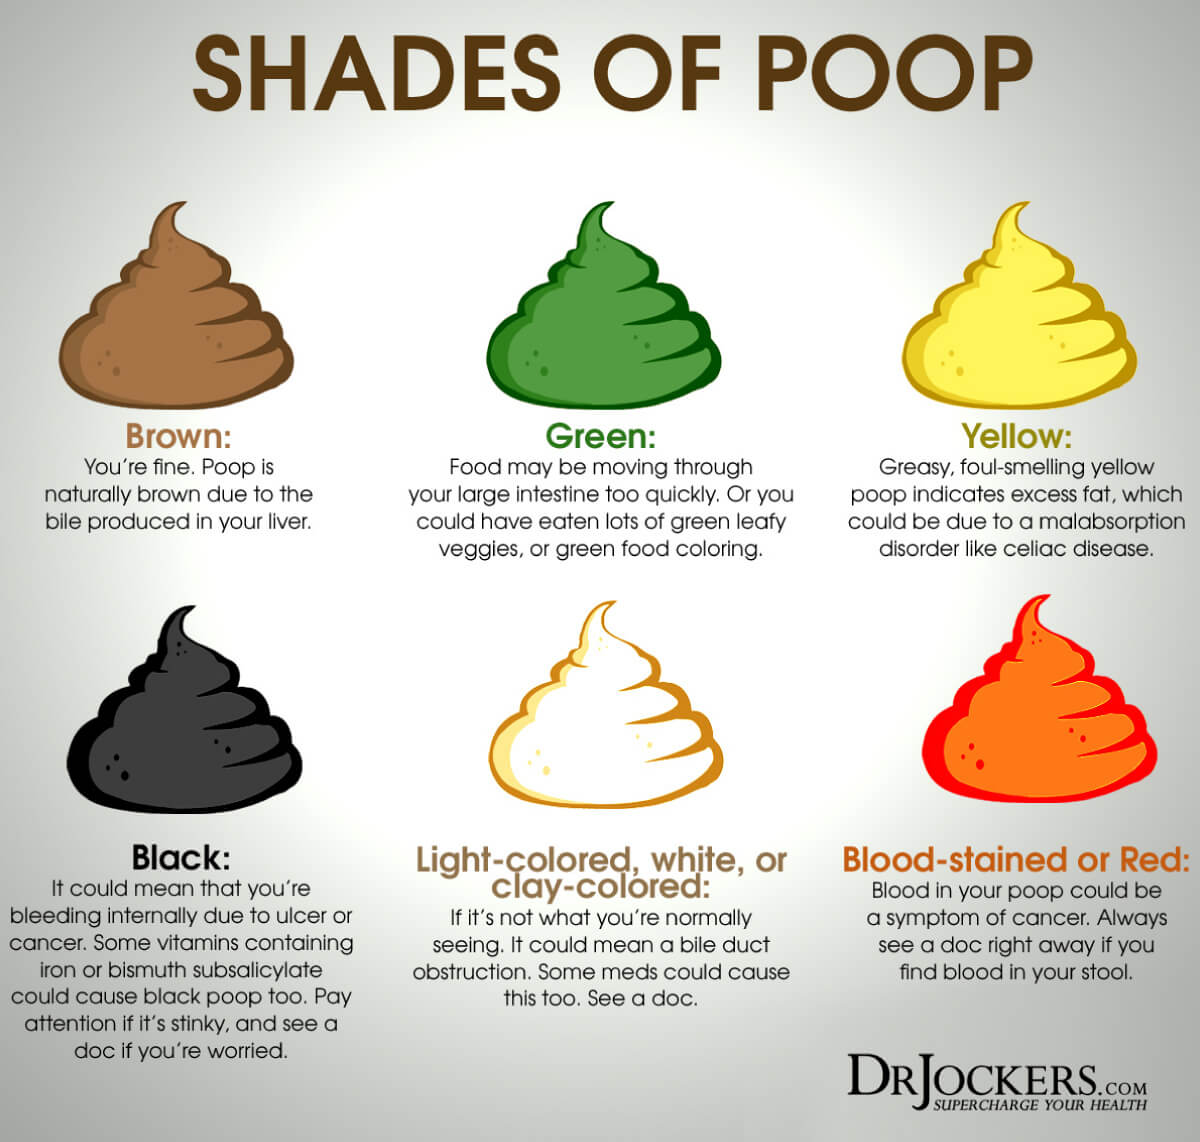 poop, 16 Ways to Achieve Healthy Poop